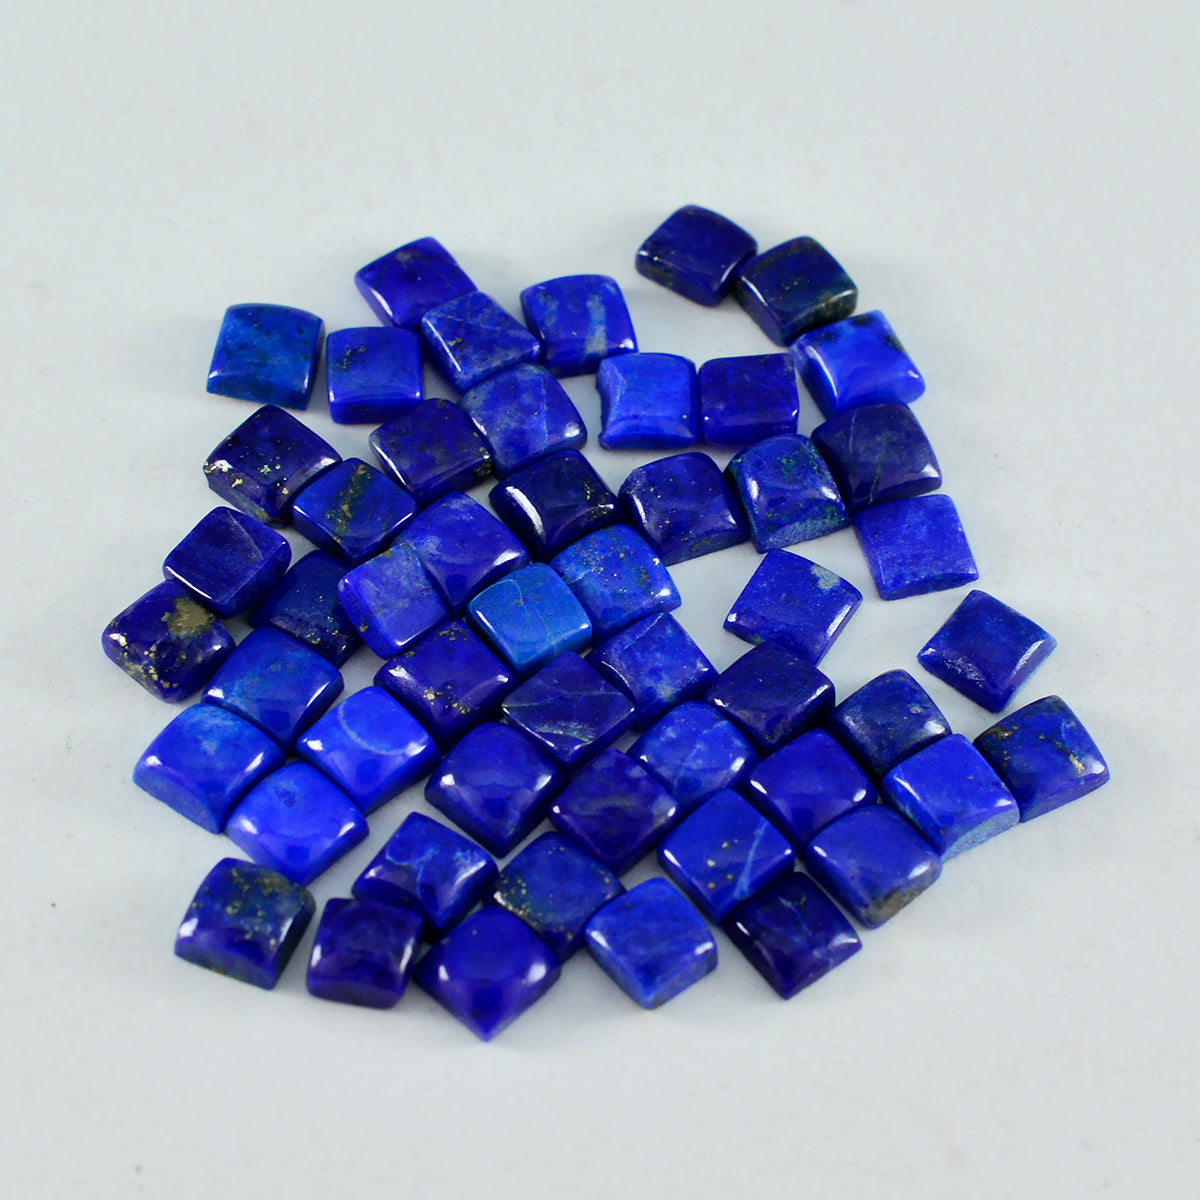 Riyogems 1 pc cabochon lapis lazuli bleu 5x5 mm forme carrée gemme de superbe qualité